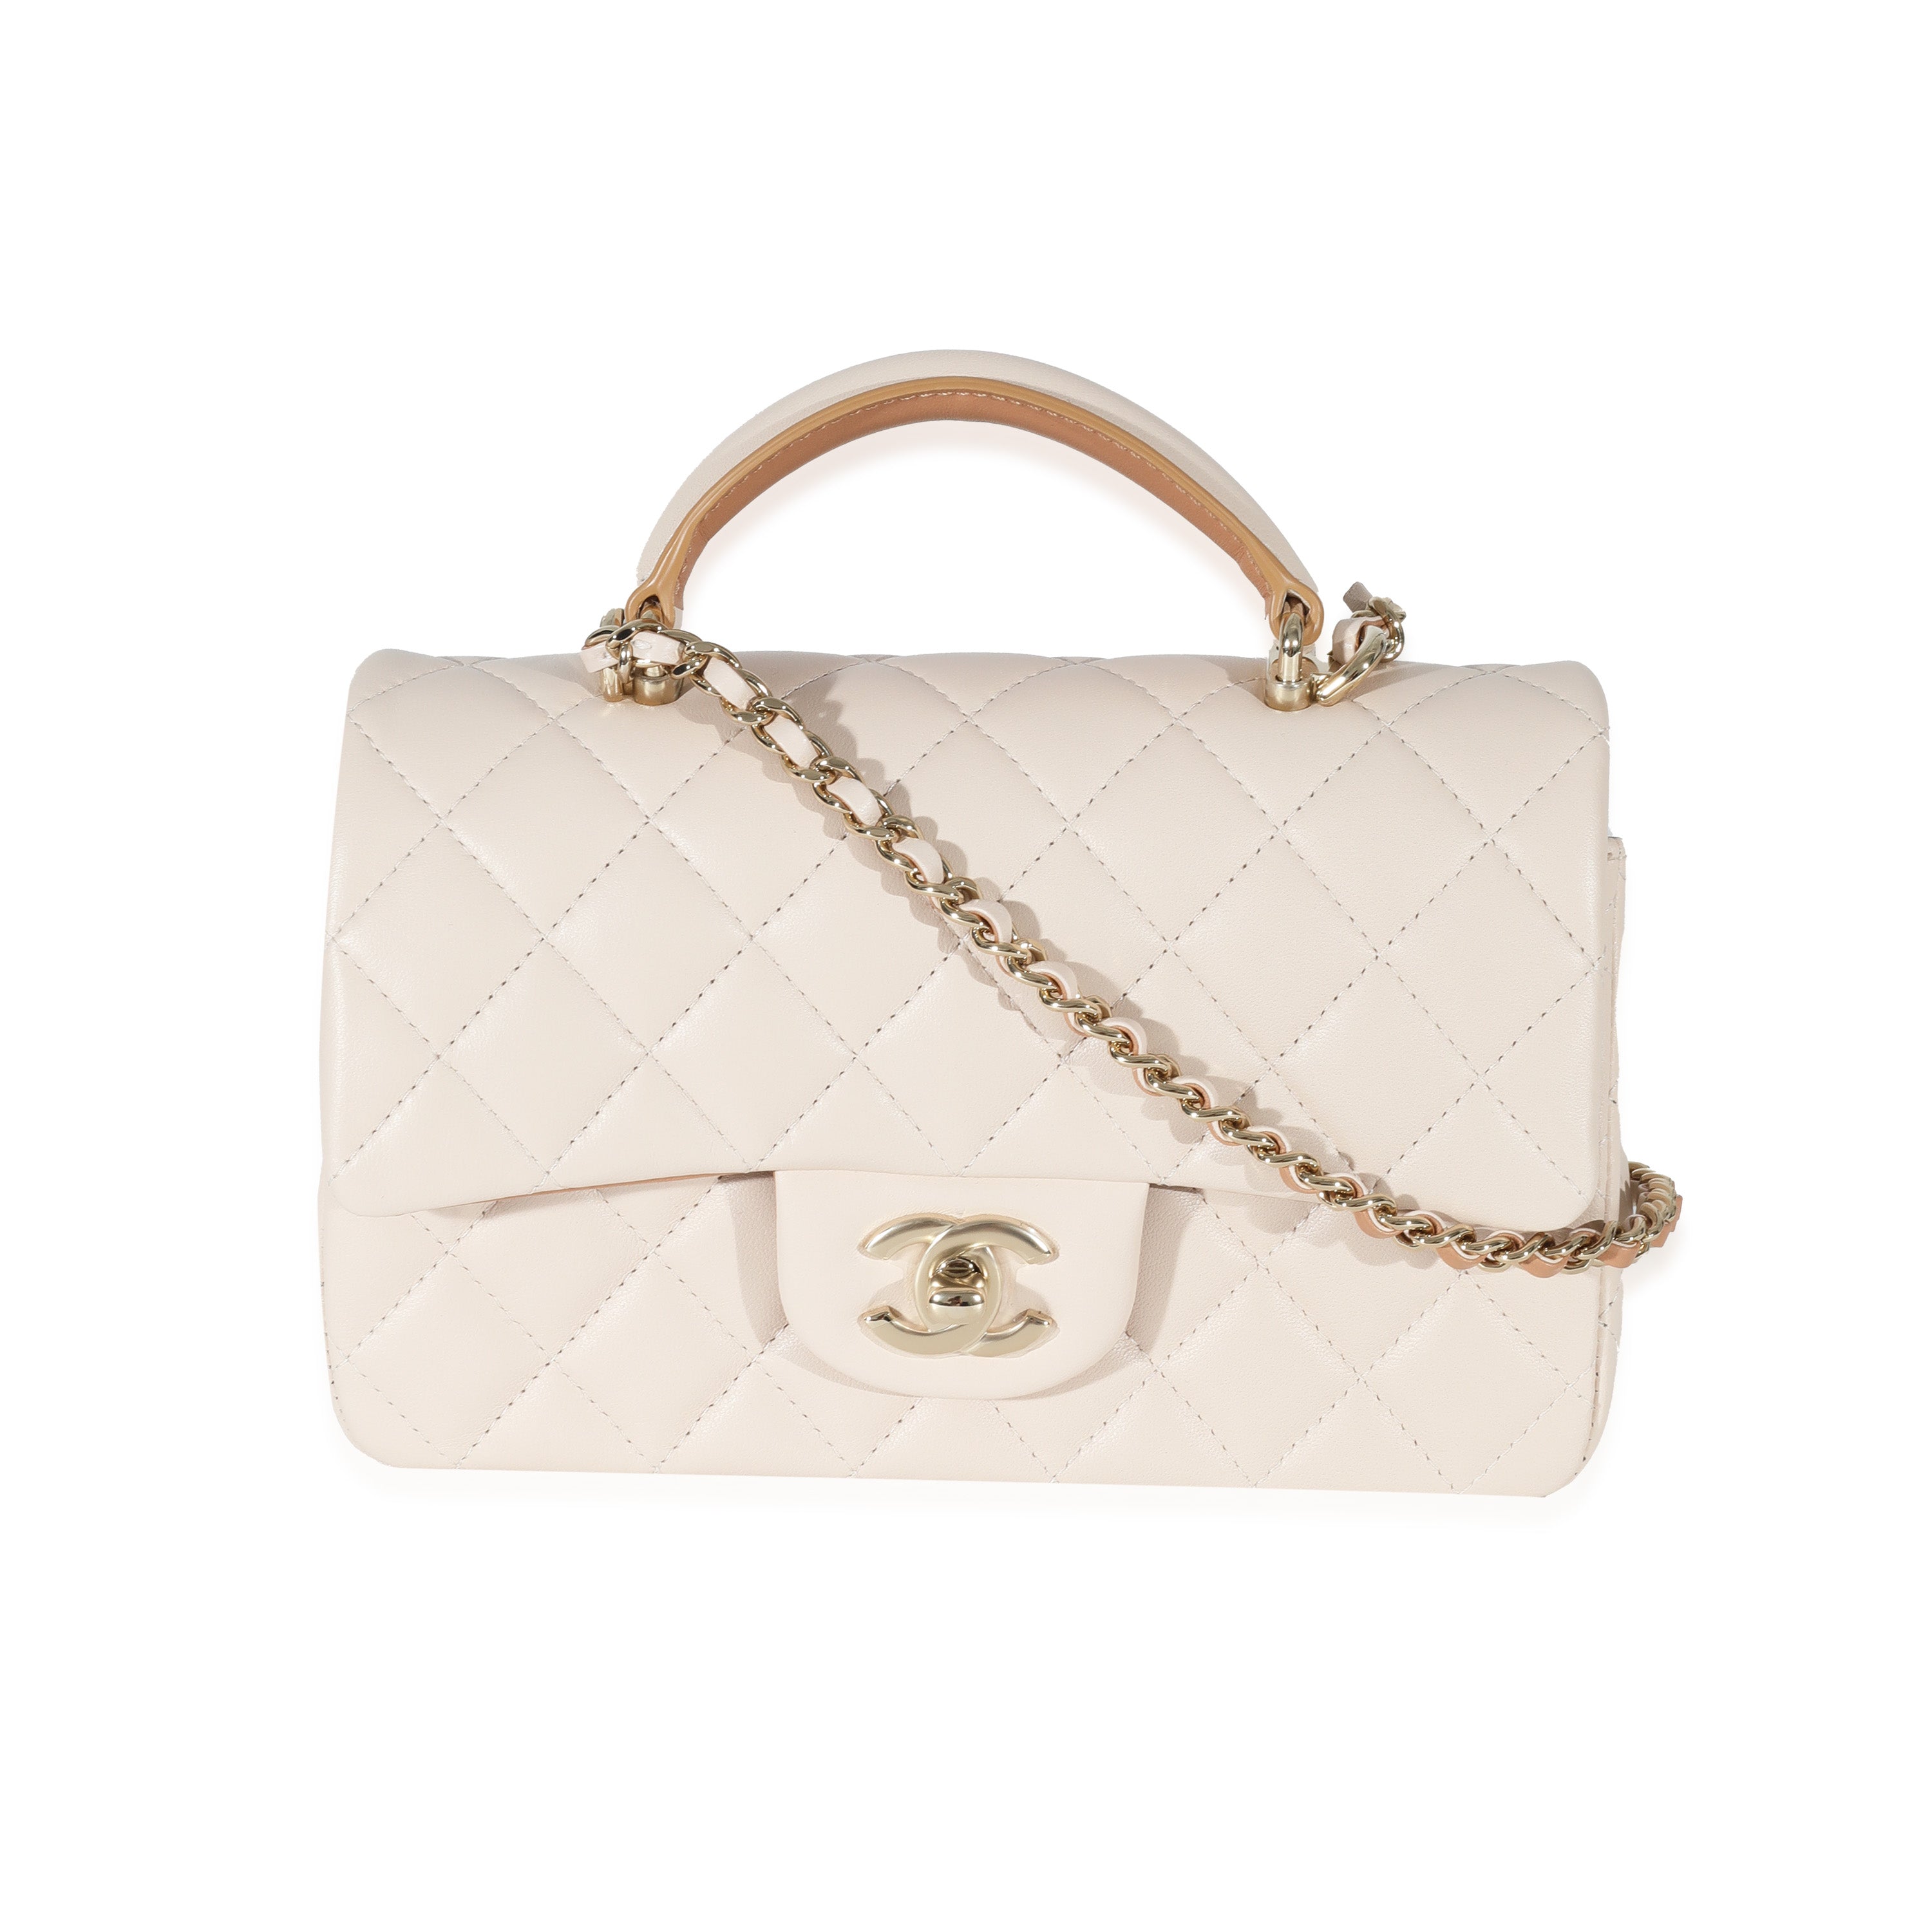 New Chanel Classic 2021 Rectangular Mini Beige Flap Bag